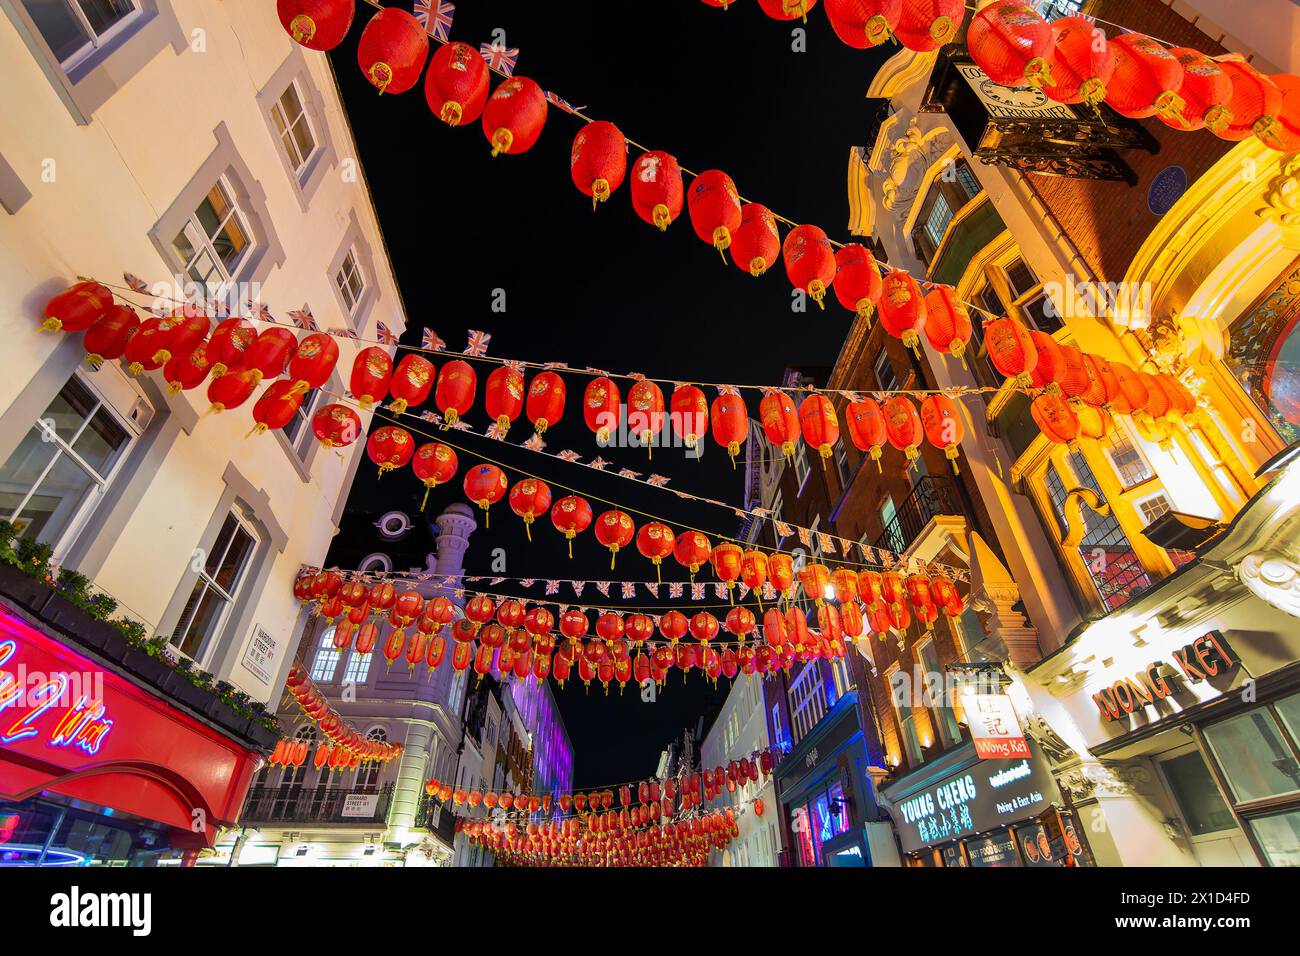 lanternes chinoises rouges dans la rue Gerrard, Chinatown la nuit à Londres, Royaume-Uni Banque D'Images